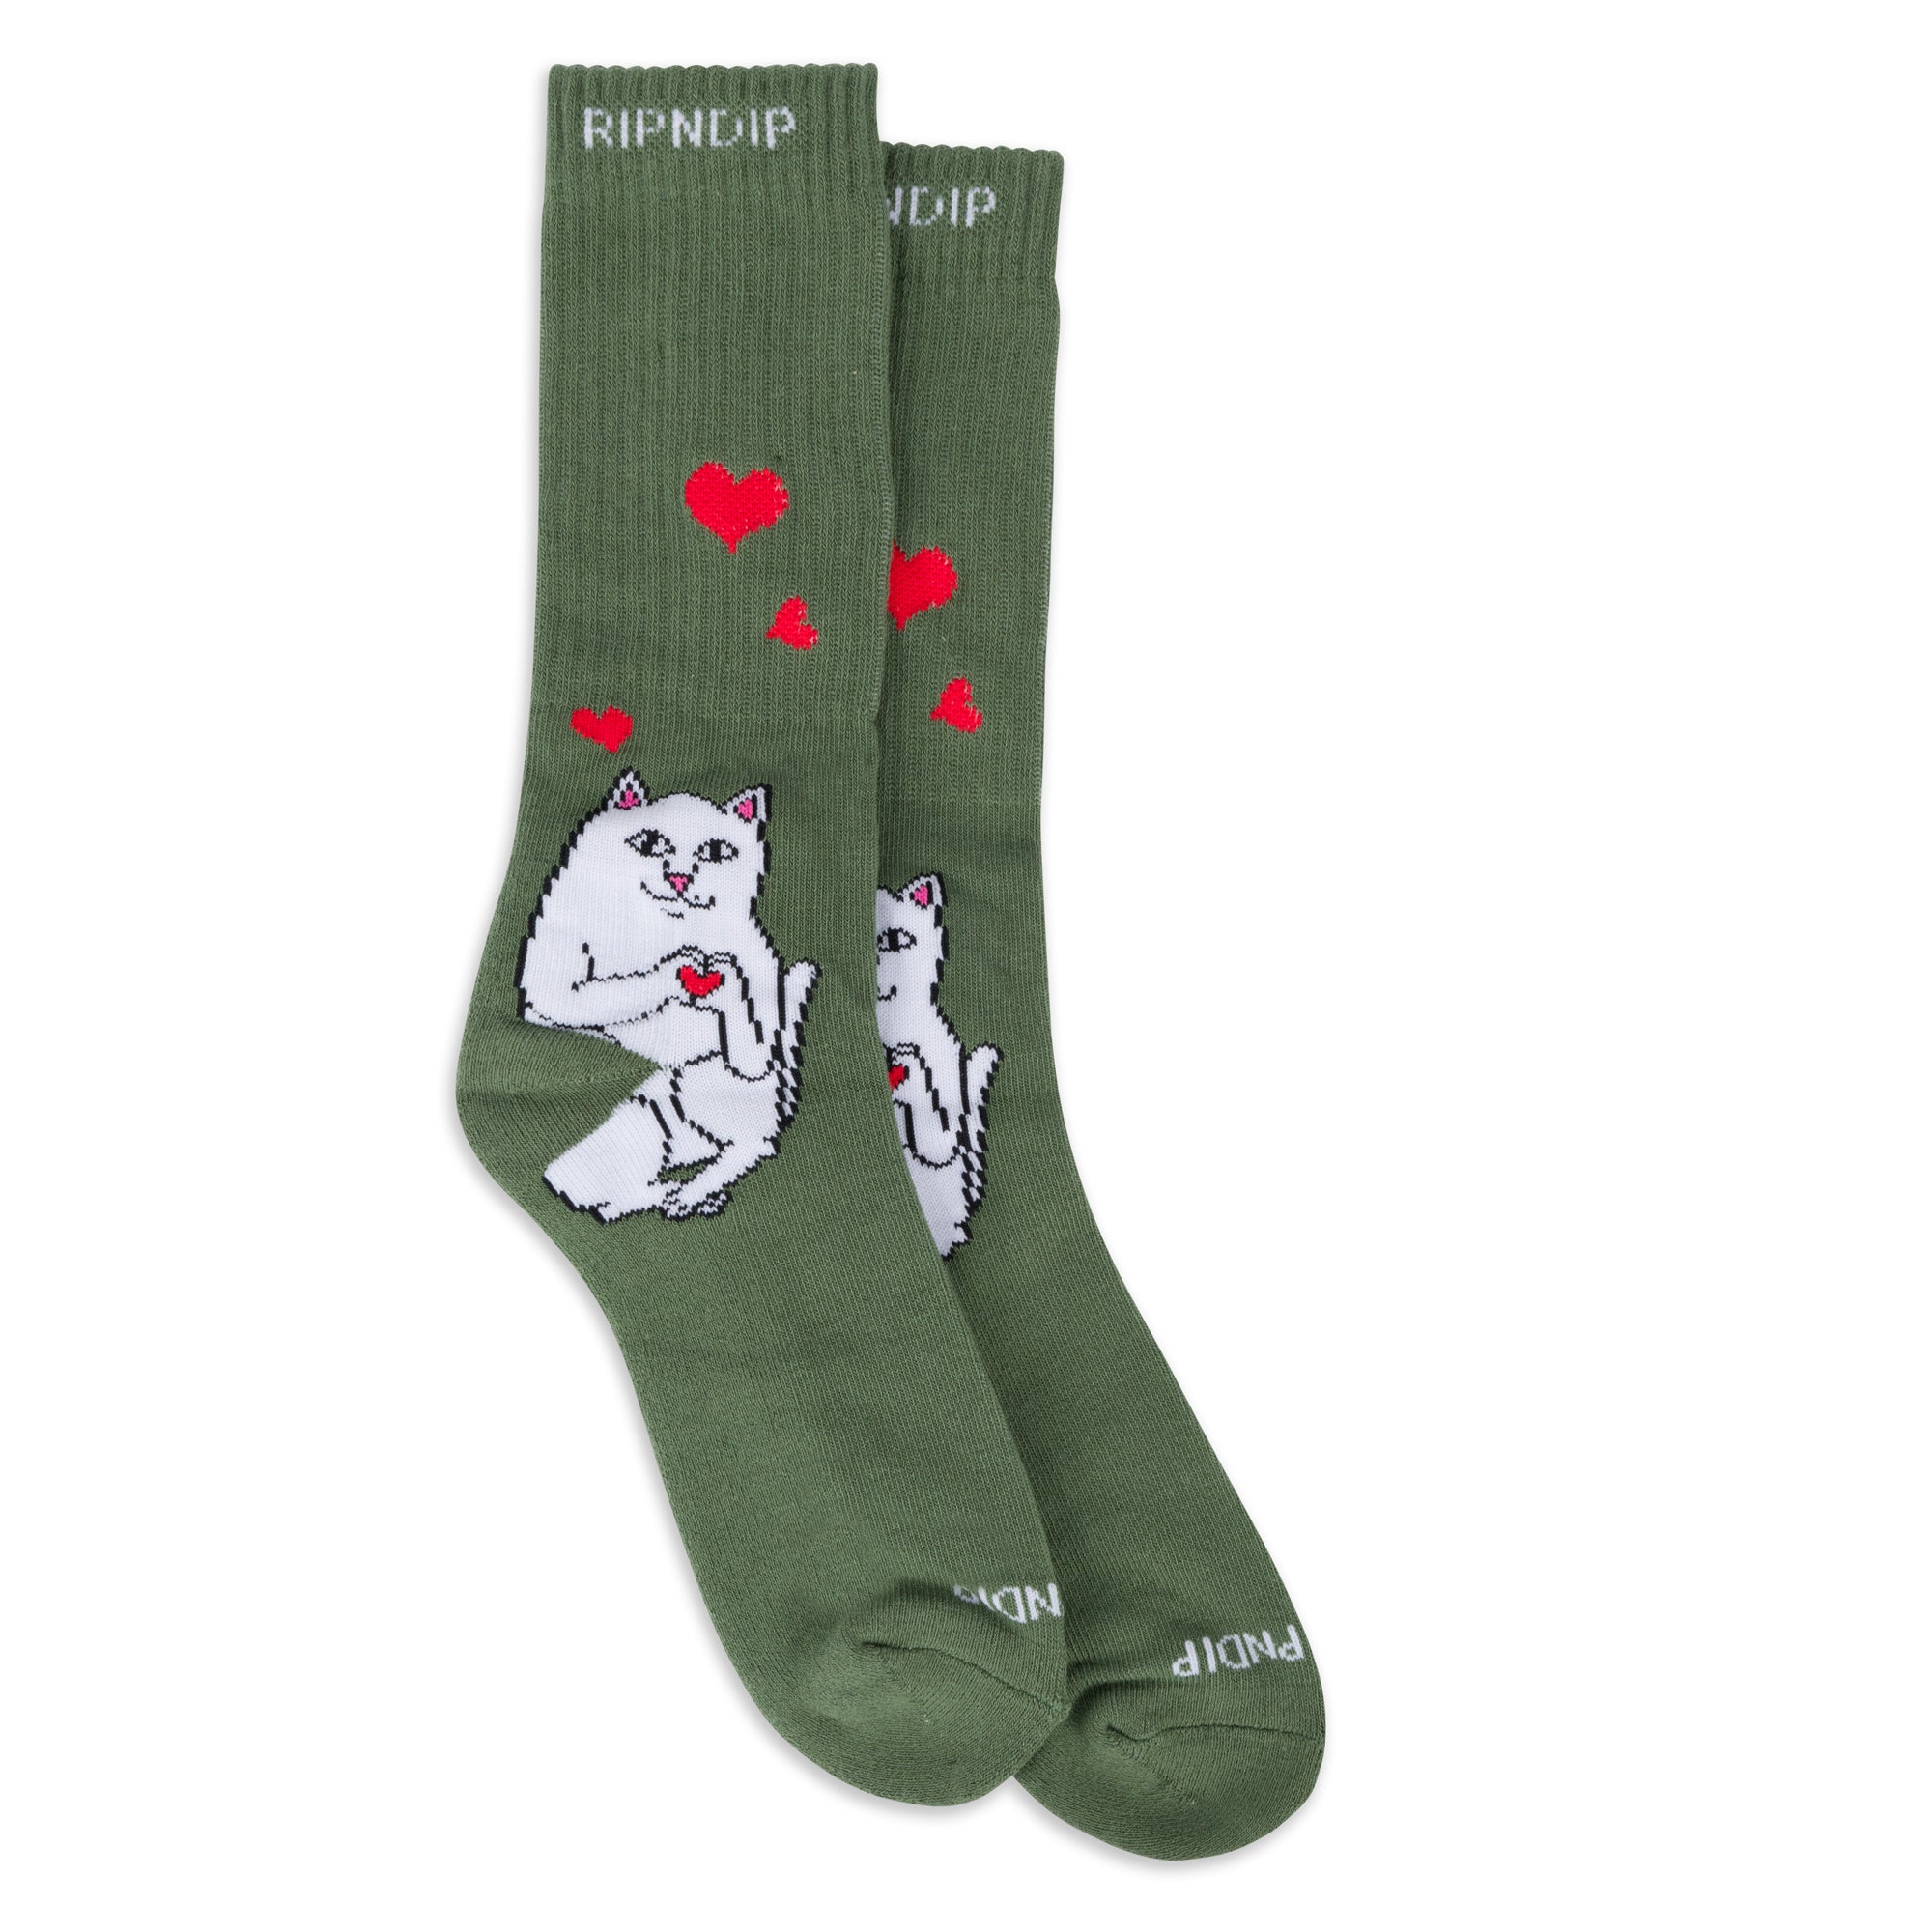 Nermal Love Socks (Olive)